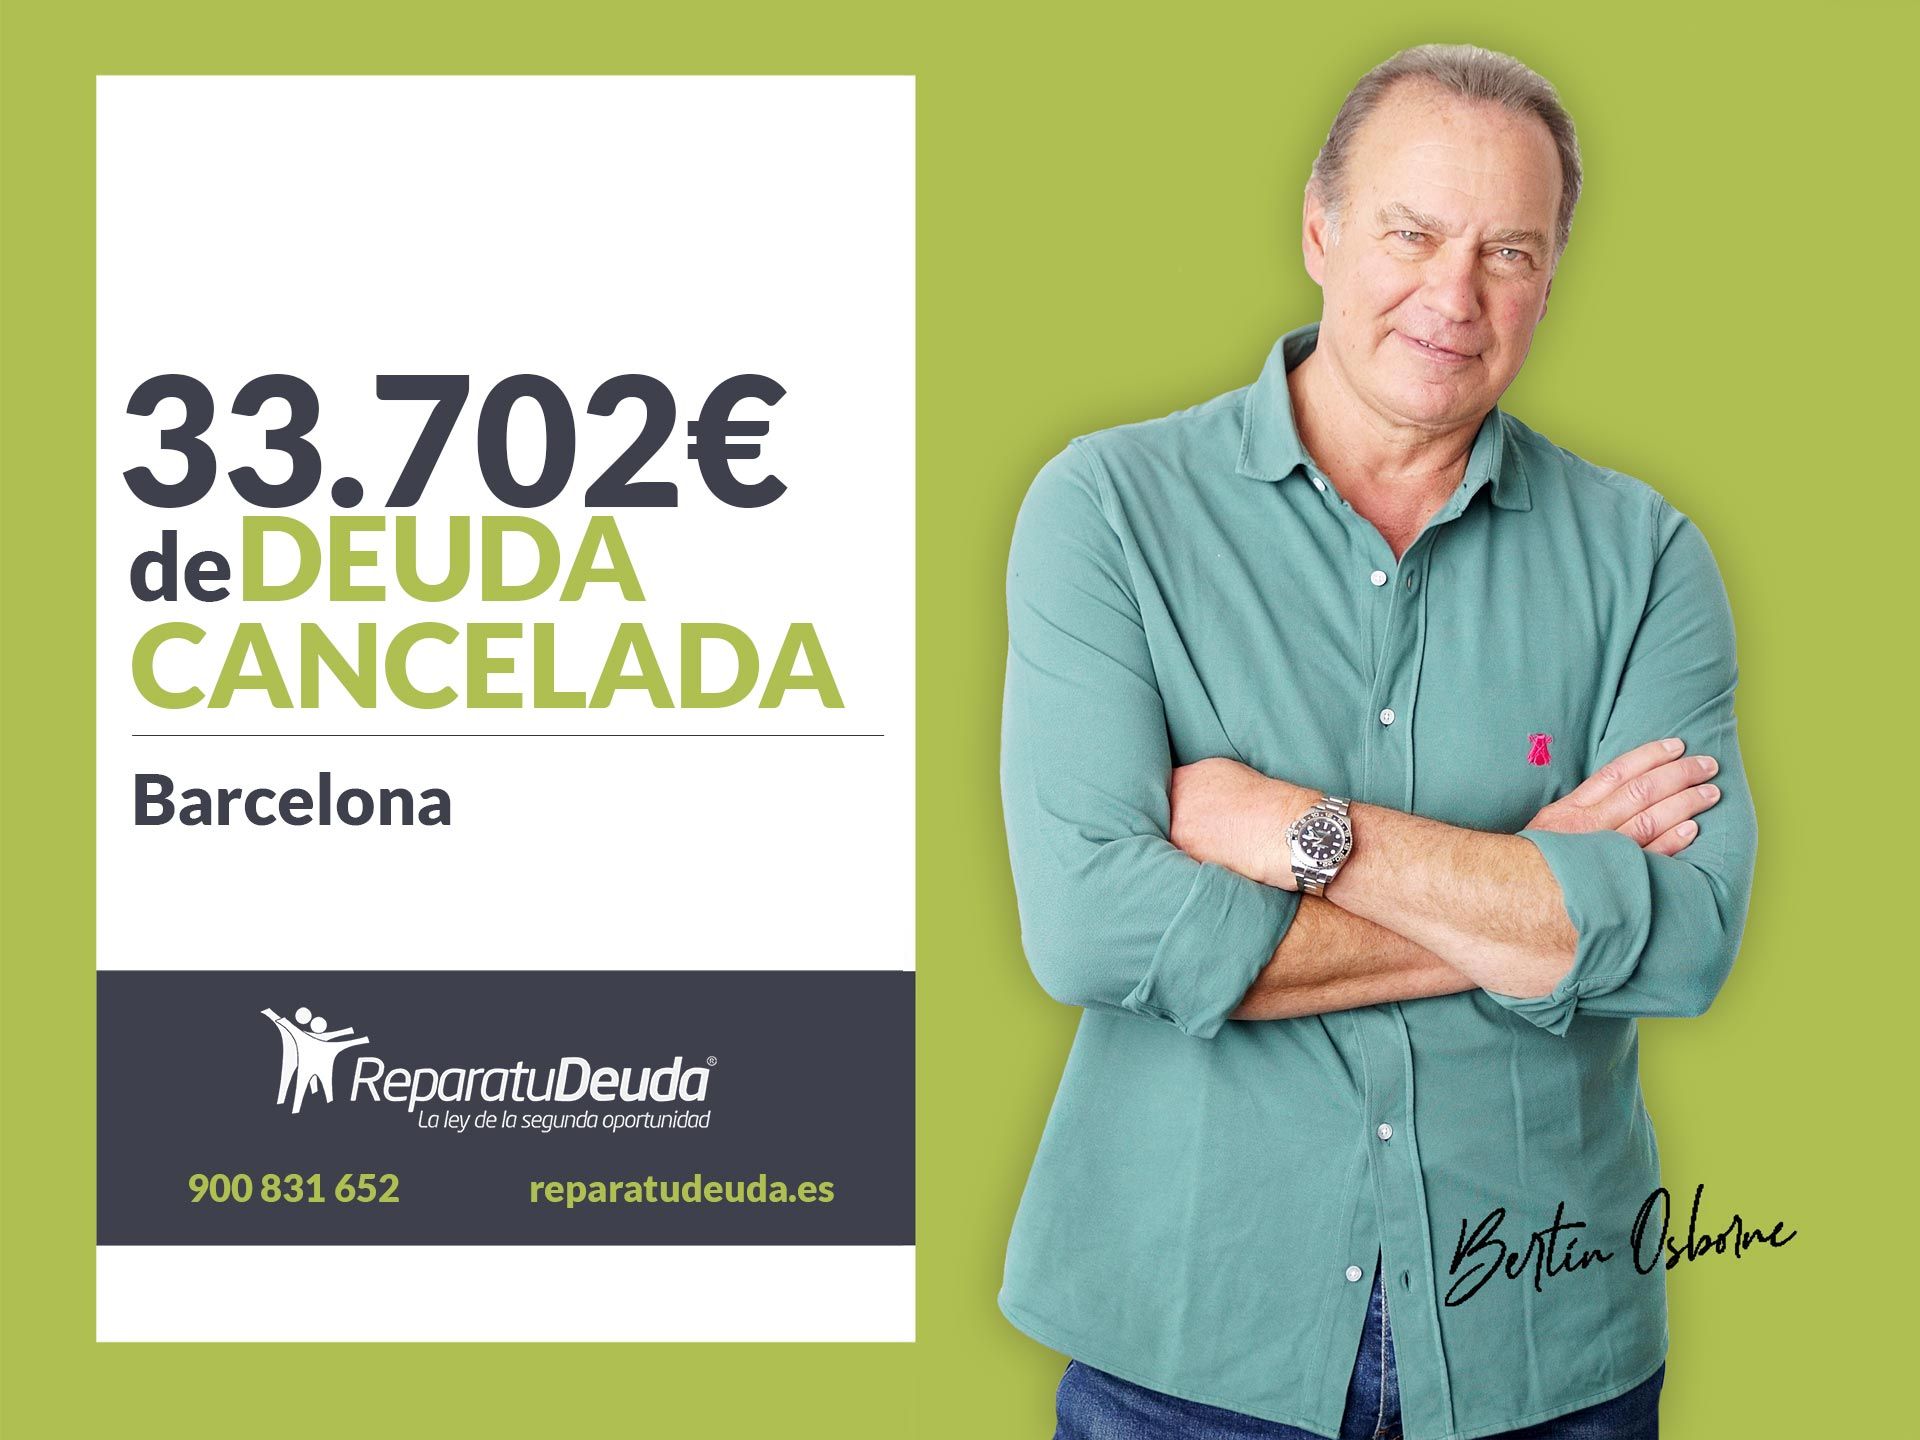 Repara tu Deuda Abogados cancela 33.702 ? en Barcelona (Catalunya) con la Ley de la Segunda Oportunidad